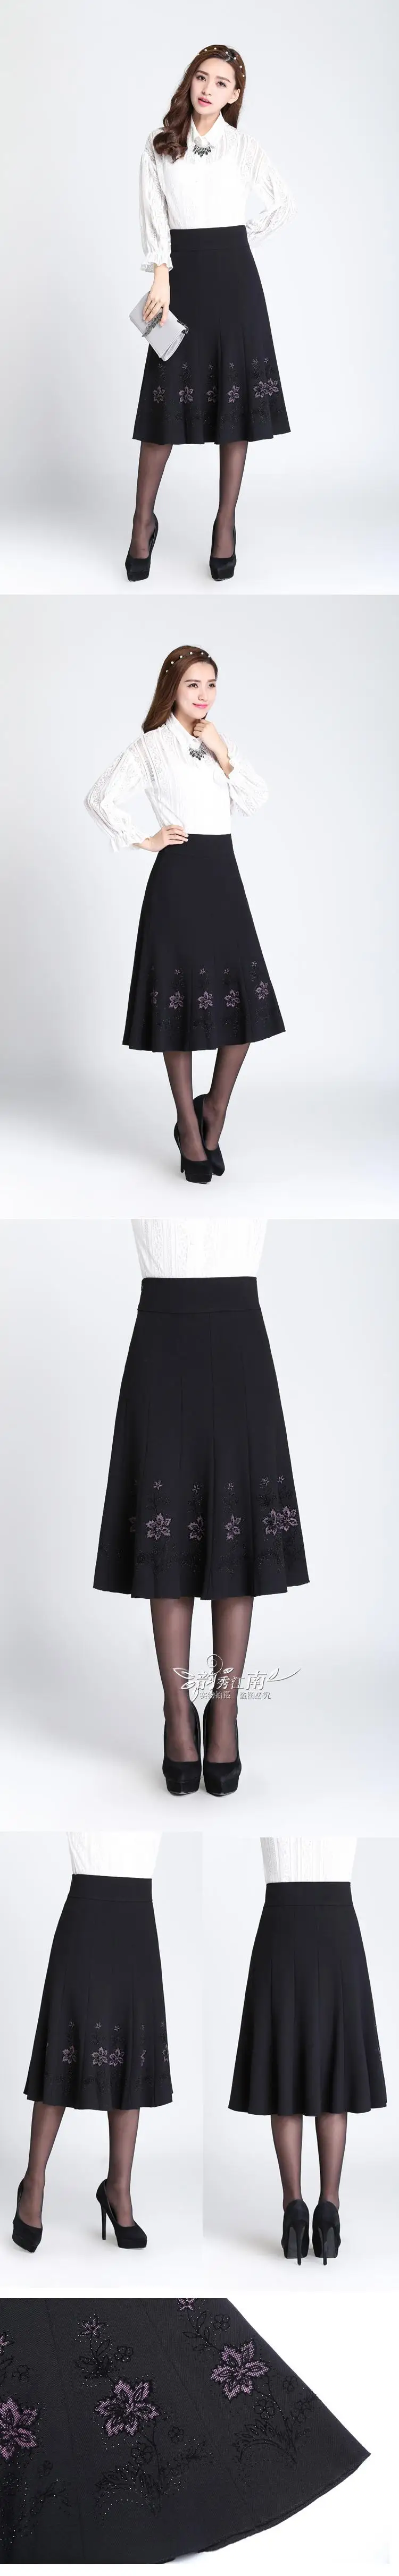 S-7XL осенне-зимняя юбка для женщин среднего возраста, стразы размера плюс, тонкая юбка с высокой талией, Длинная женская трапециевидная плиссированная юбка 7XL